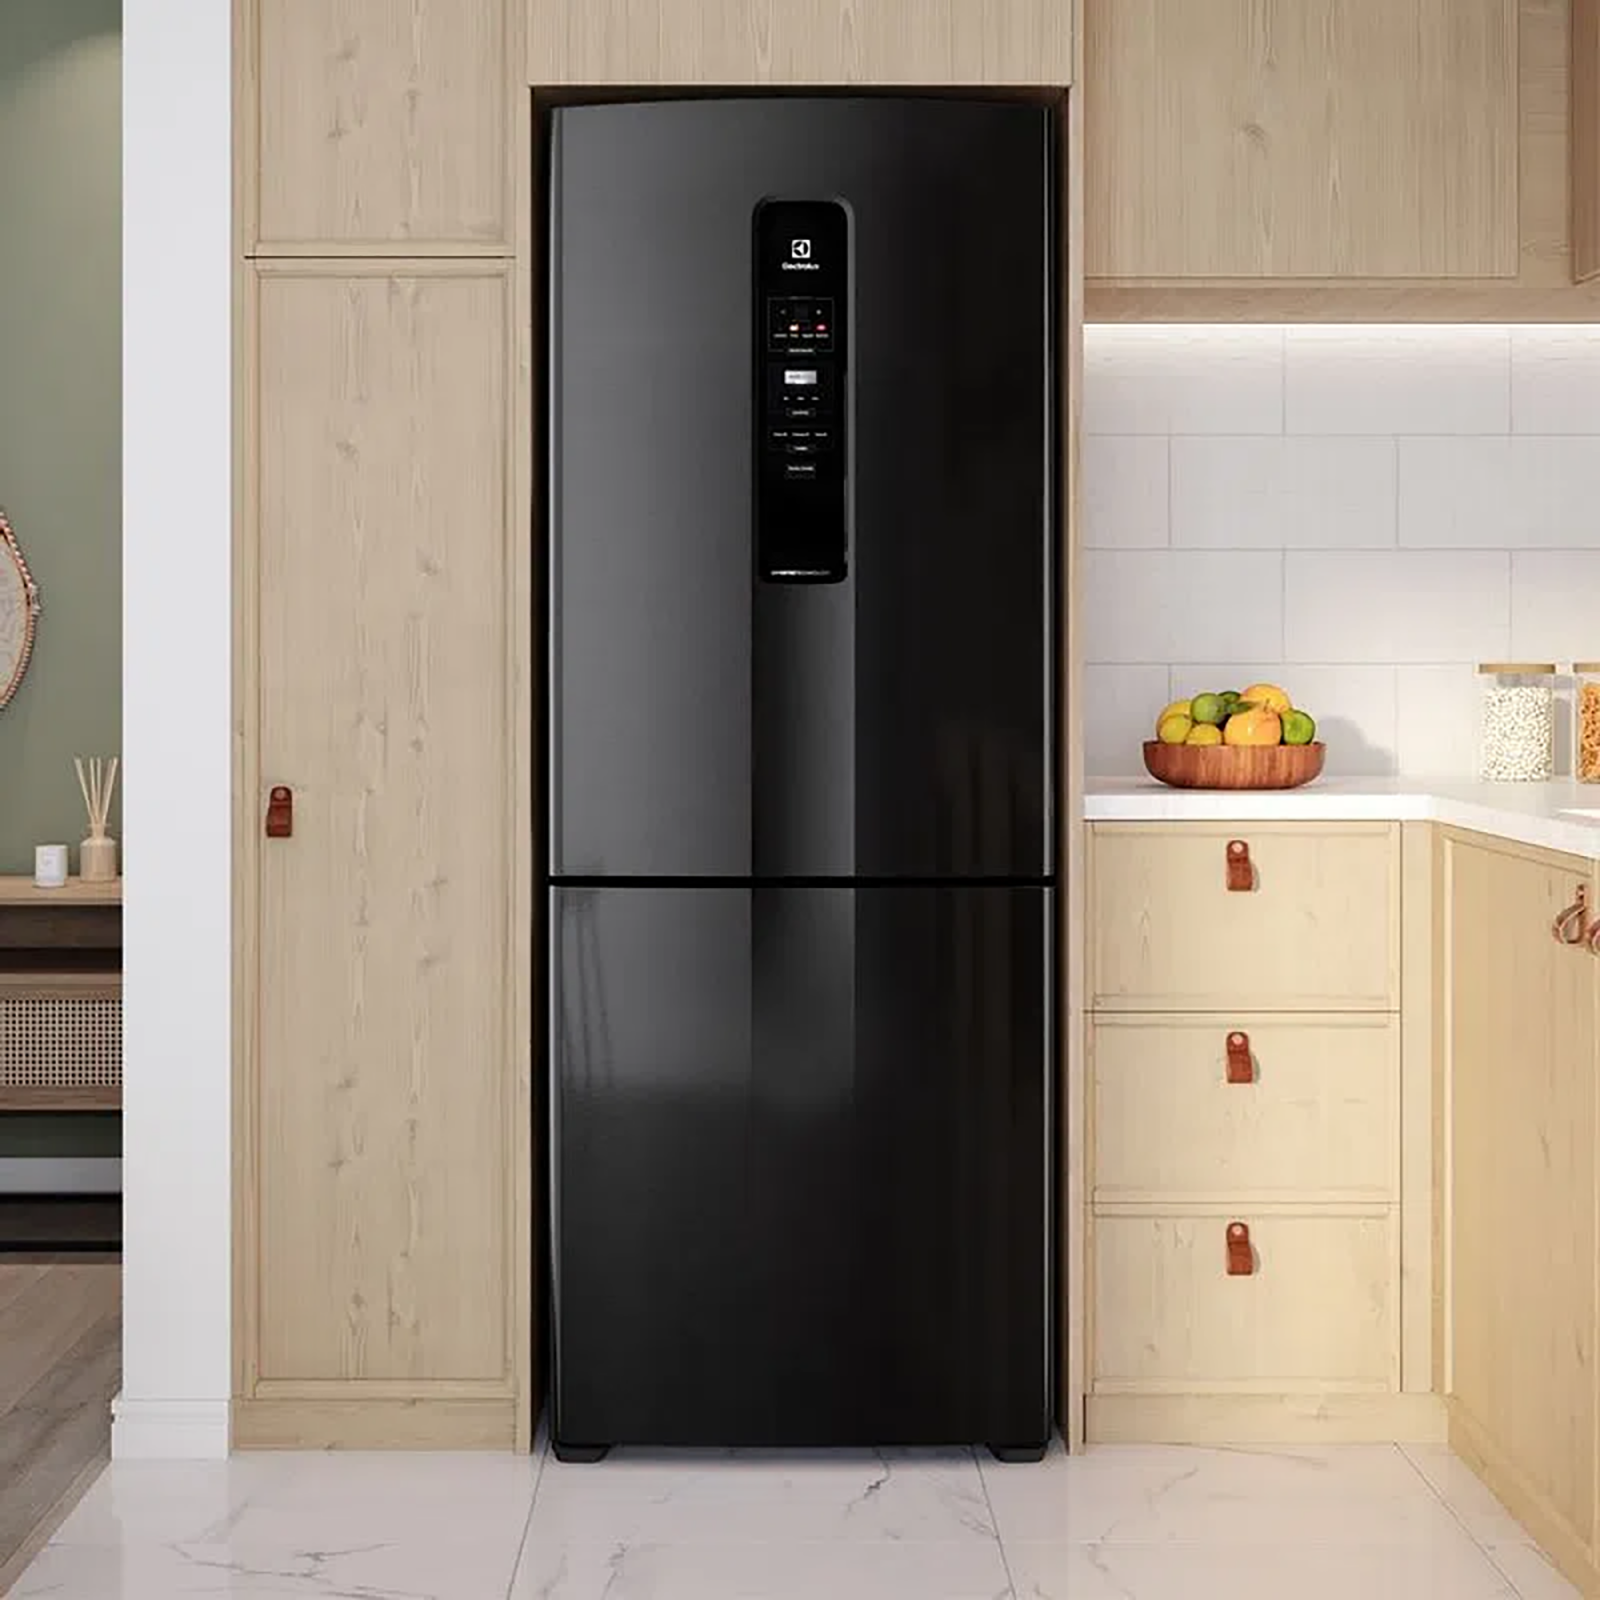 No solo tu teléfono, ahora también tu refrigerador es inteligente